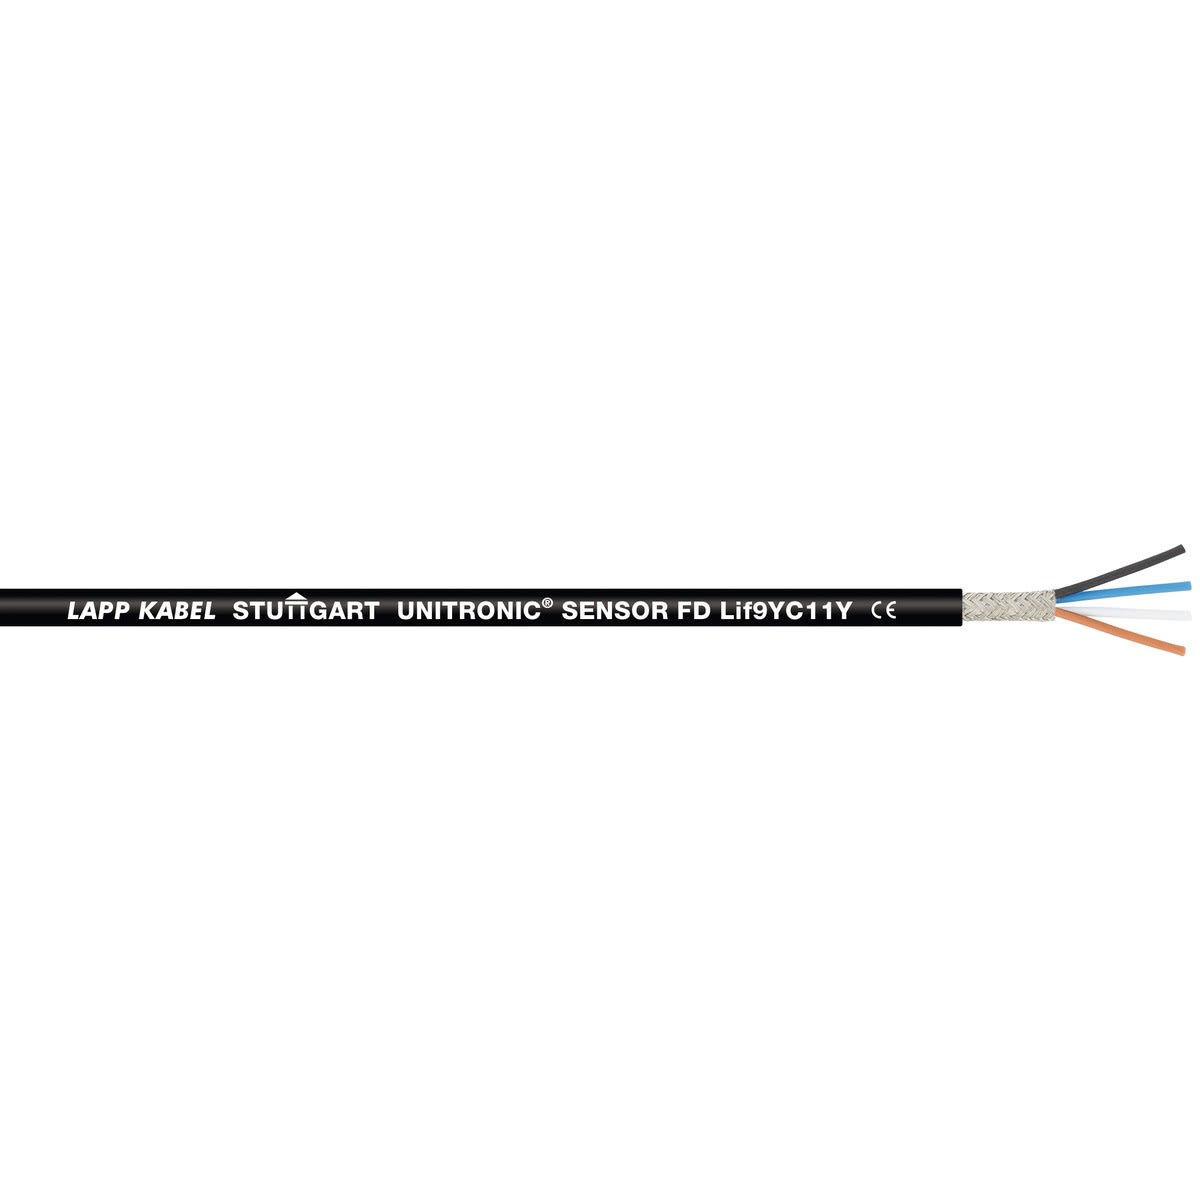 Lapp - UNITRONIC SENSOR FD Lif9YC11Y 5x0,34